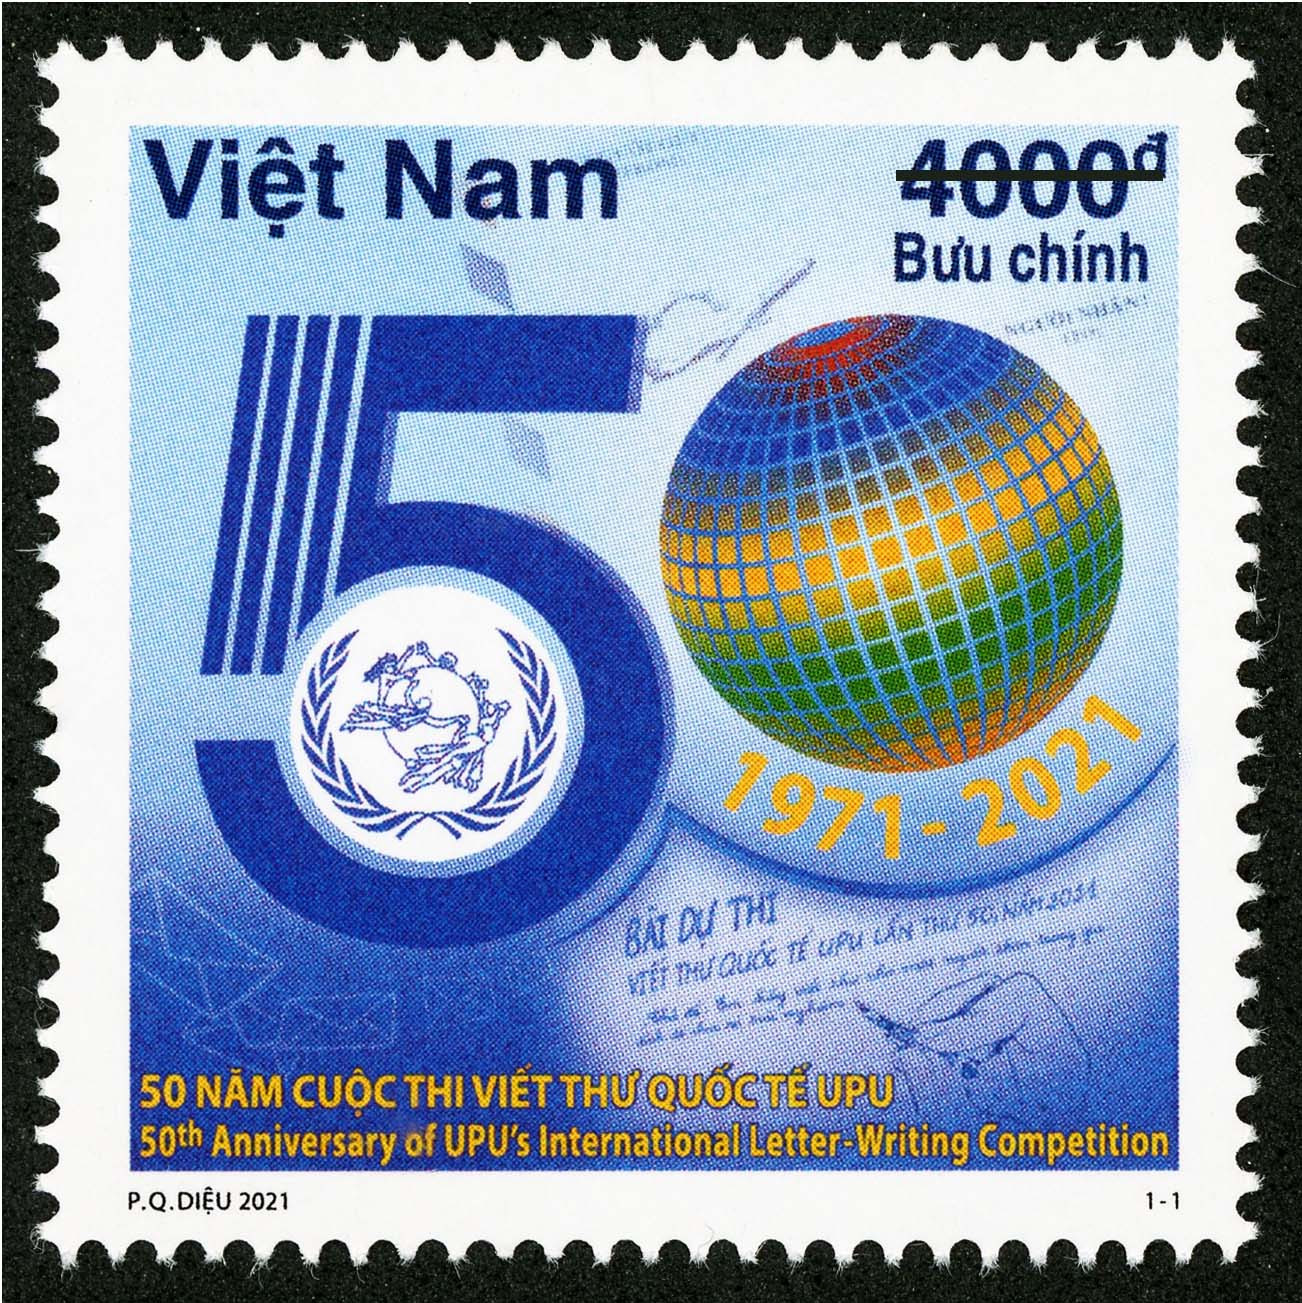 Phát hành bộ tem kỷ niệm 50 năm cuộc thi viết thư quốc tế UPU - Ảnh 1.